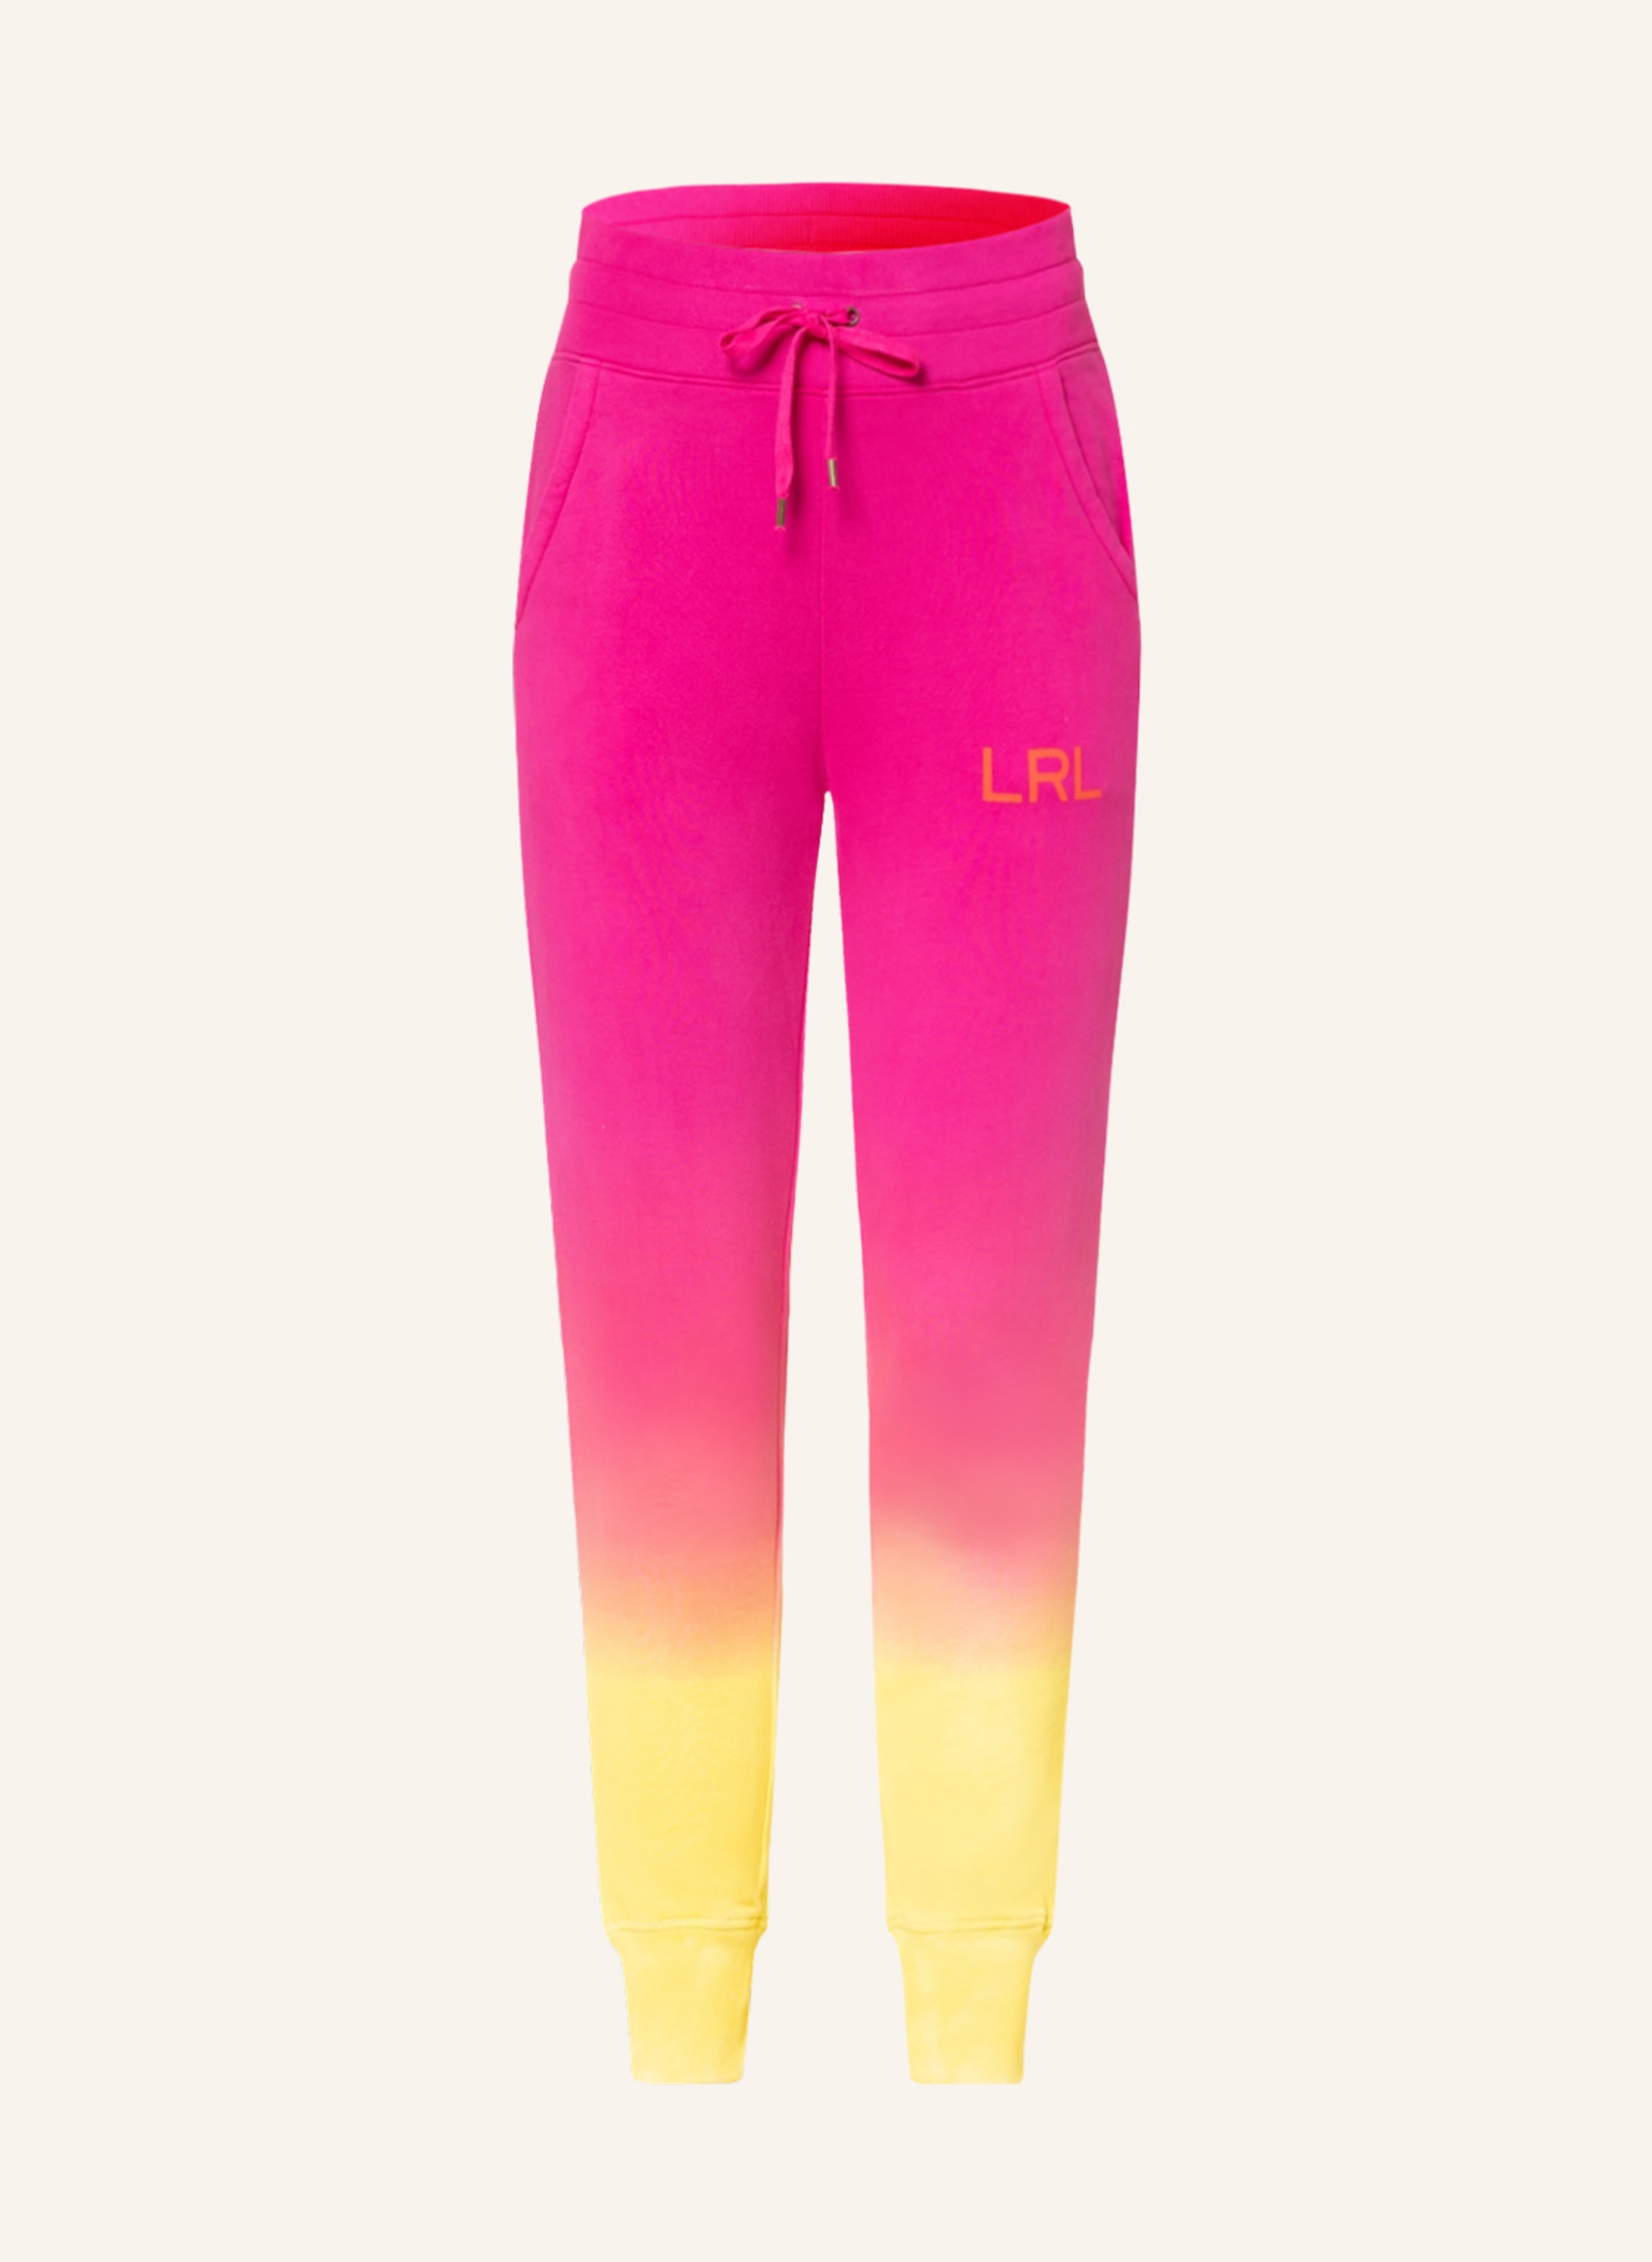 LAUREN RALPH LAUREN Sweatpants in pink/ yellow/ orange | Breuninger